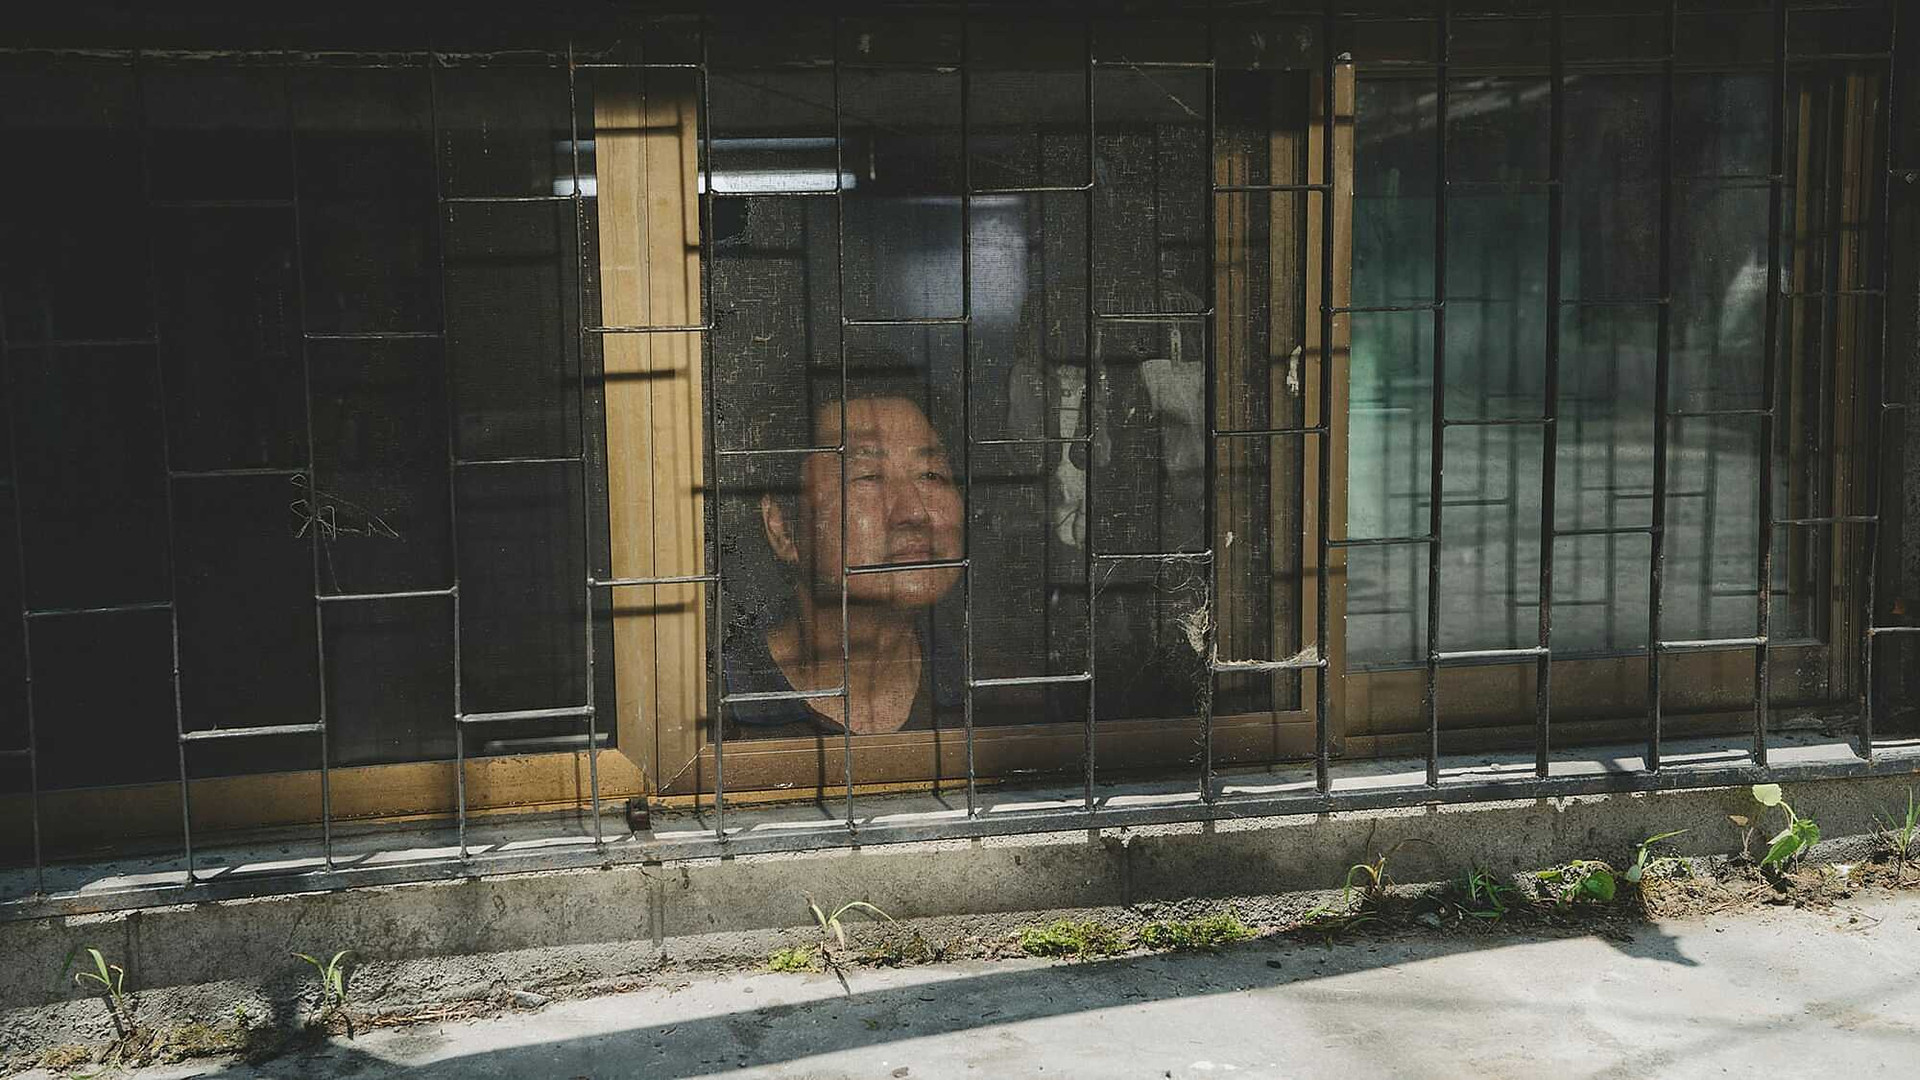 Nhà bán hầm và trận lũ lịch sử bóc trần mặt tối cuộc sống người nghèo Hàn Quốc - 2